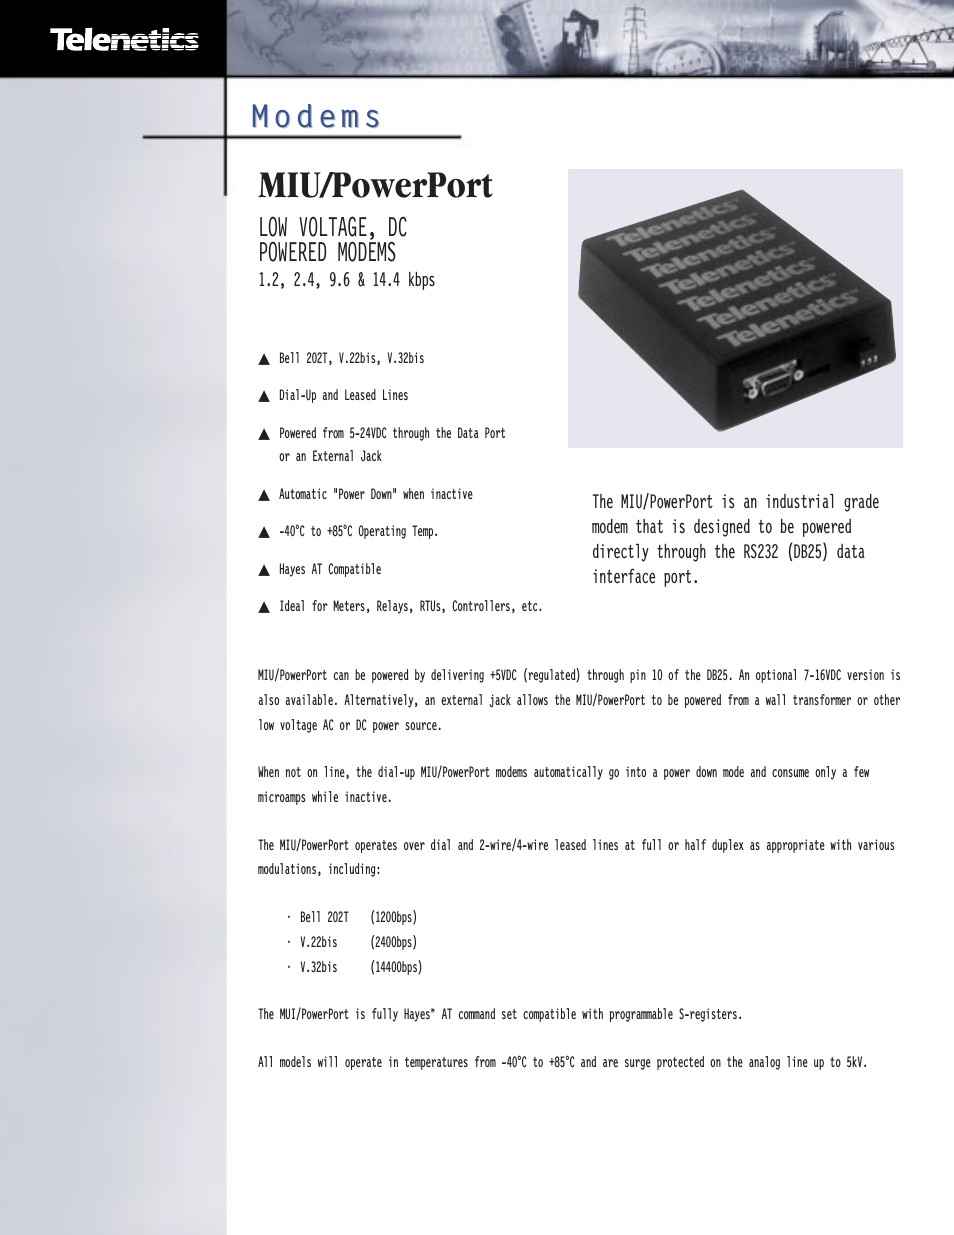 MIU/PowerPort Series 14.4